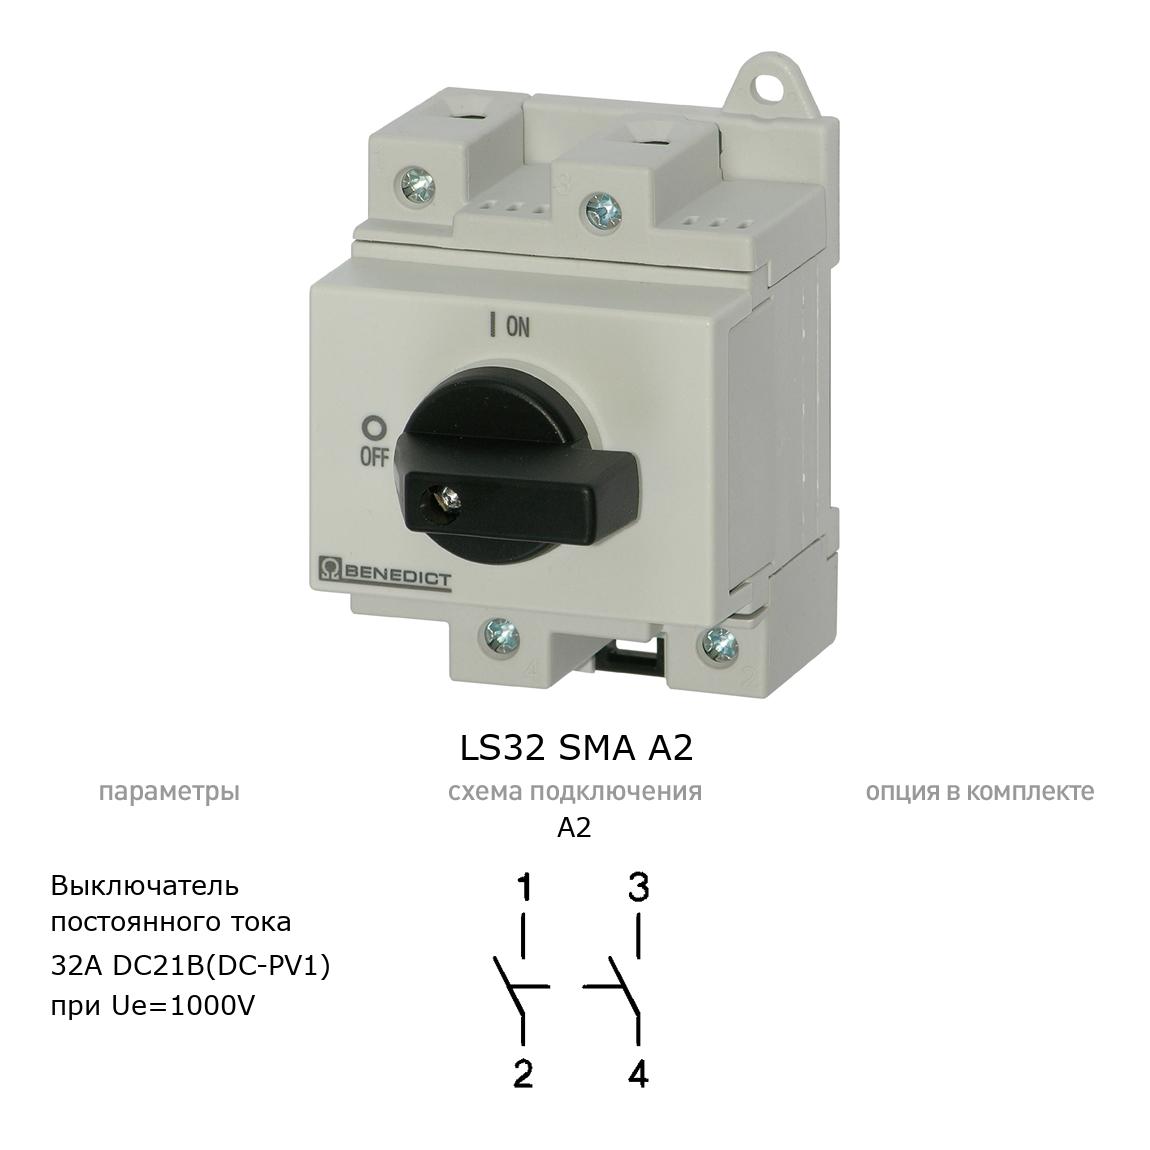 Кулачковый переключатель для постоянного тока (DC) LS32 SMA A2 BENEDICT